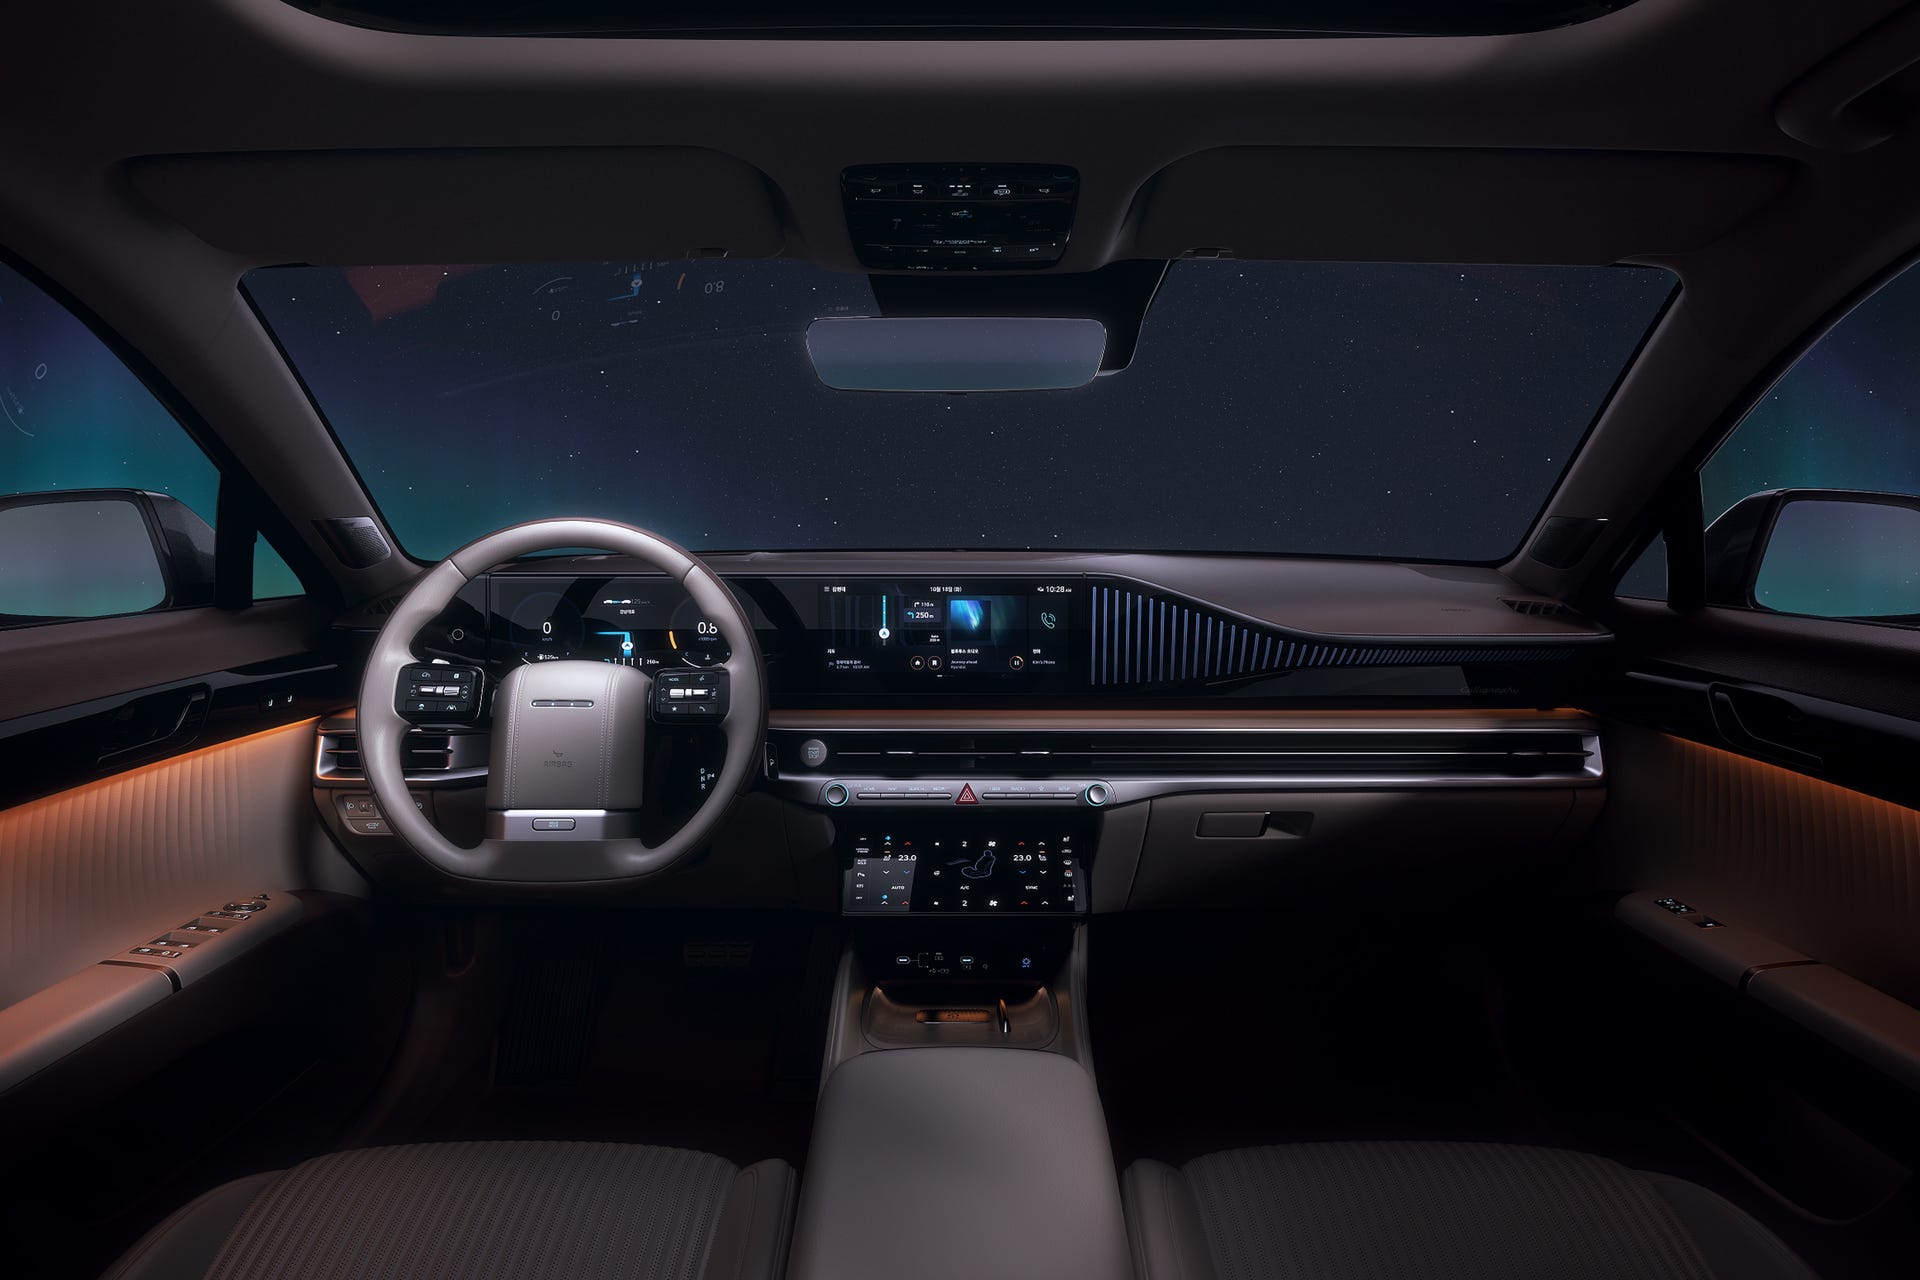 Hyundai Grandeur steering wheel and dashboard